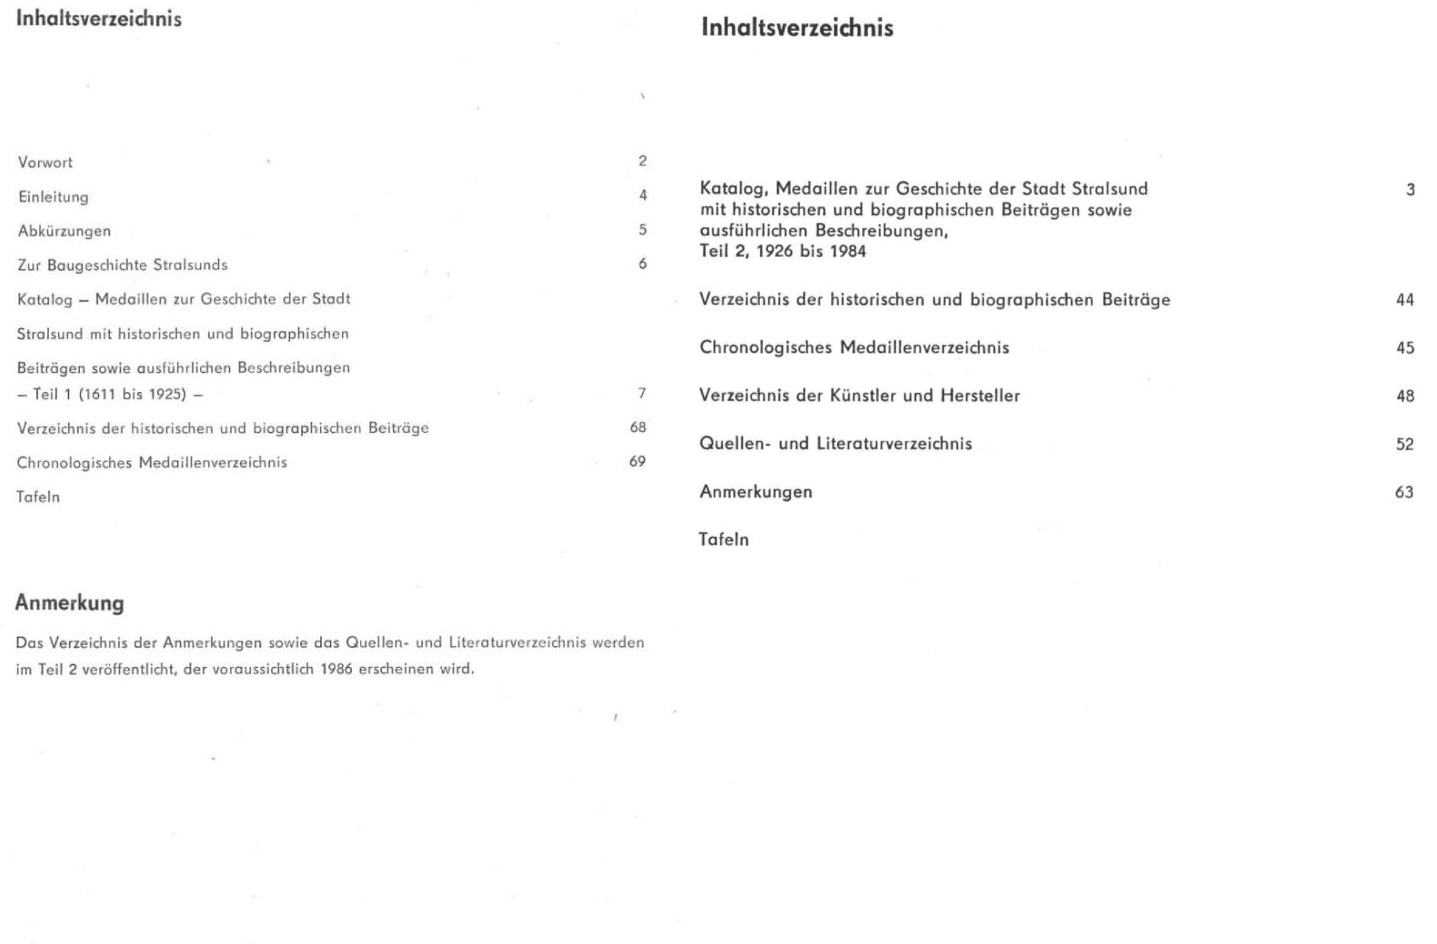  DDR Numismatische Hefte 16 (1985) Endrußeit - Medaillen zur Geschichte der Stadt Stralsund 1611-1984   